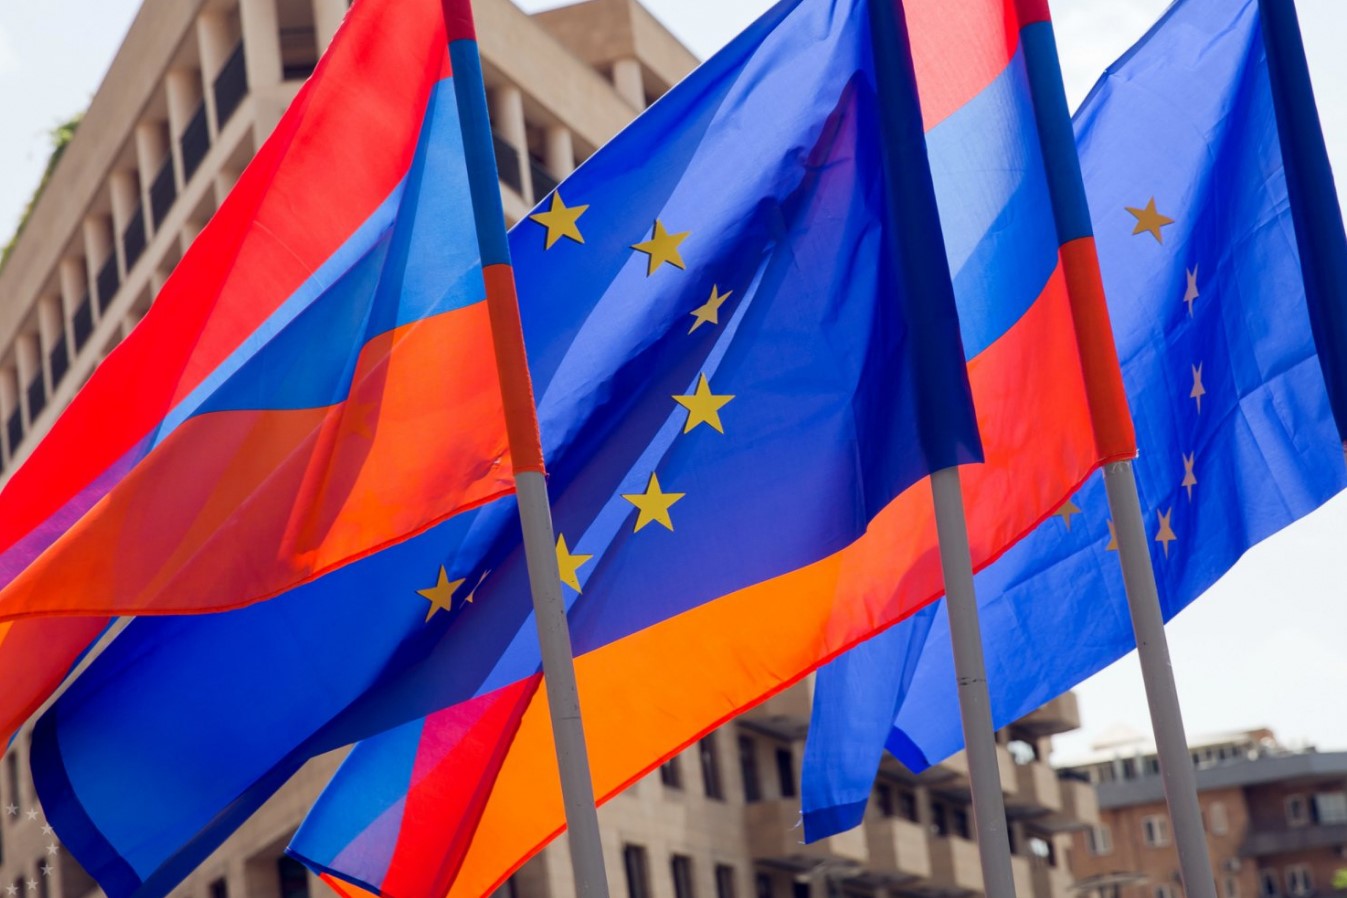 ԵՄ-ն տեխնիկական խումբ է գործուղում Հայաստան Ադրբեջանի հետ սահմանին առաքելությունը քննարկելու համար